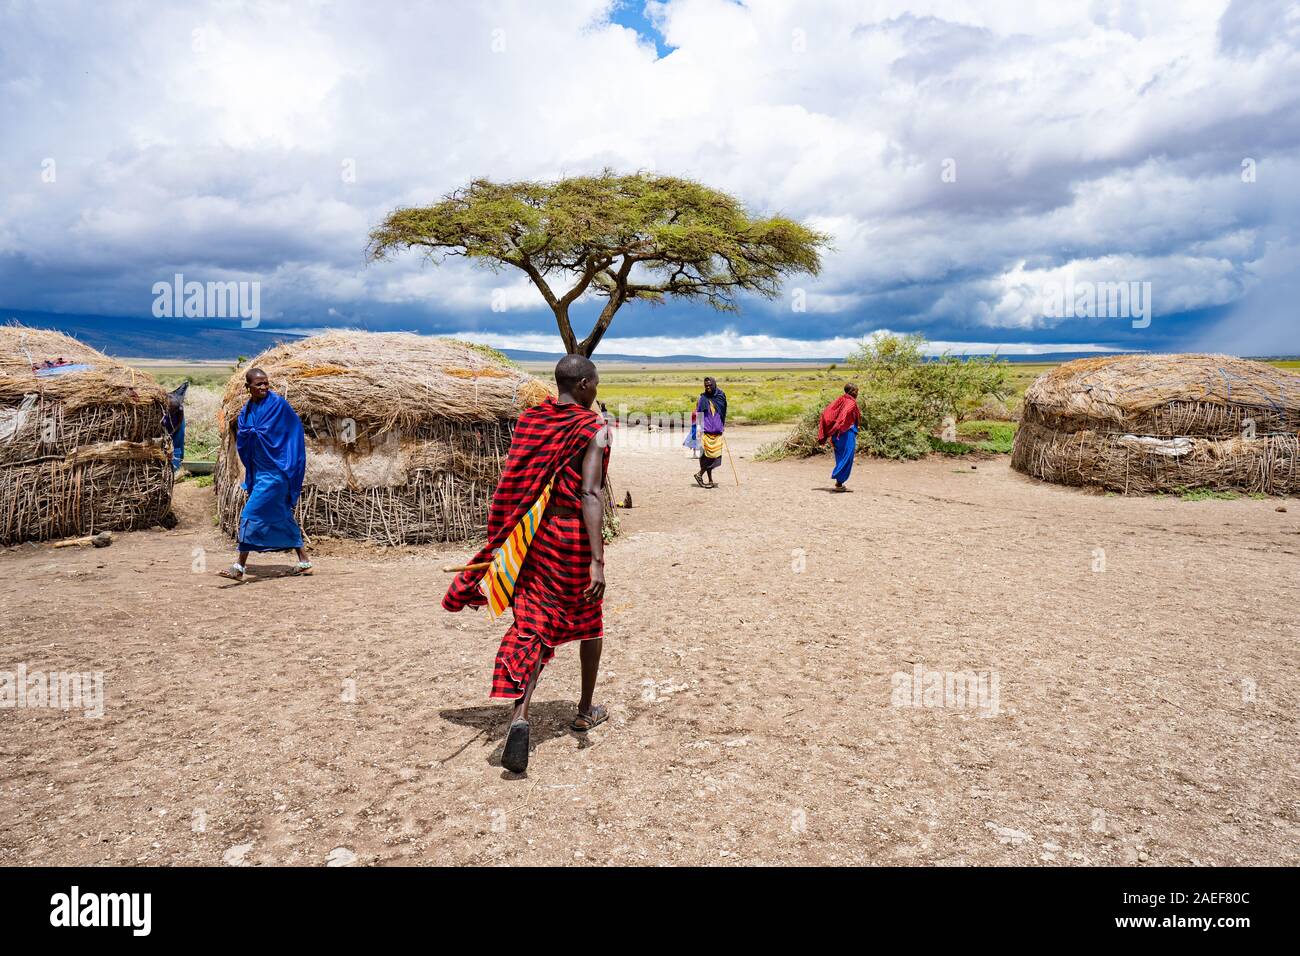 Masai Village in Tanzania Stock Photo